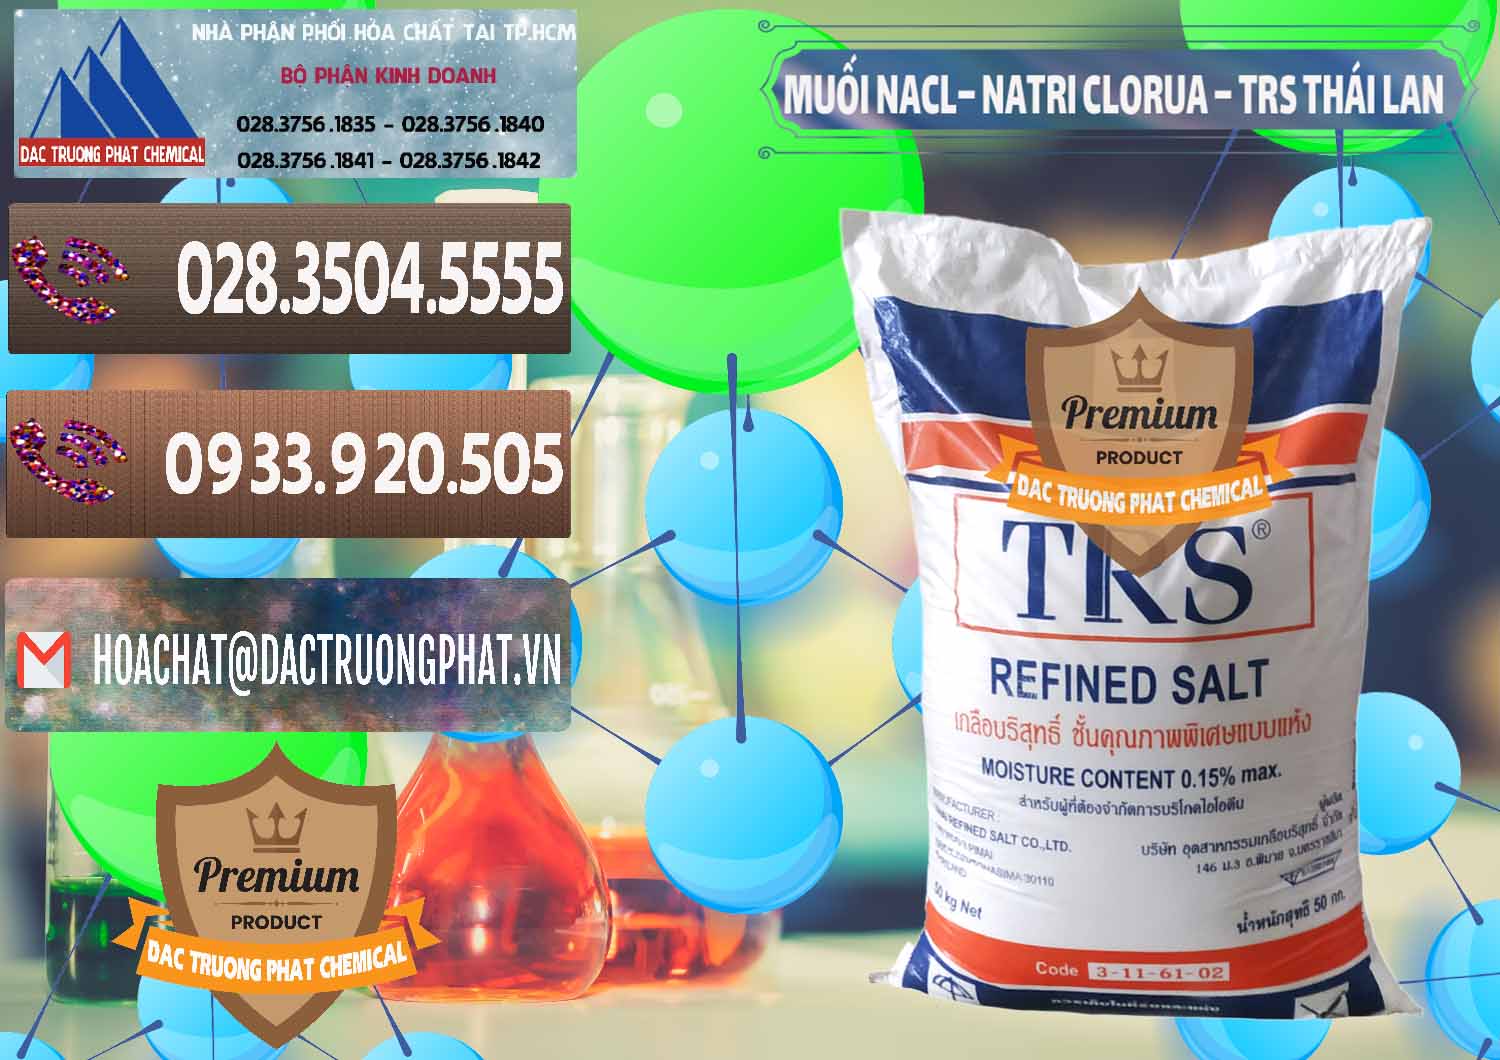 Cty chuyên kinh doanh & bán Muối NaCL – Sodium Chloride TRS Thái Lan - 0096 - Đơn vị chuyên cung ứng & phân phối hóa chất tại TP.HCM - hoachatviet.net